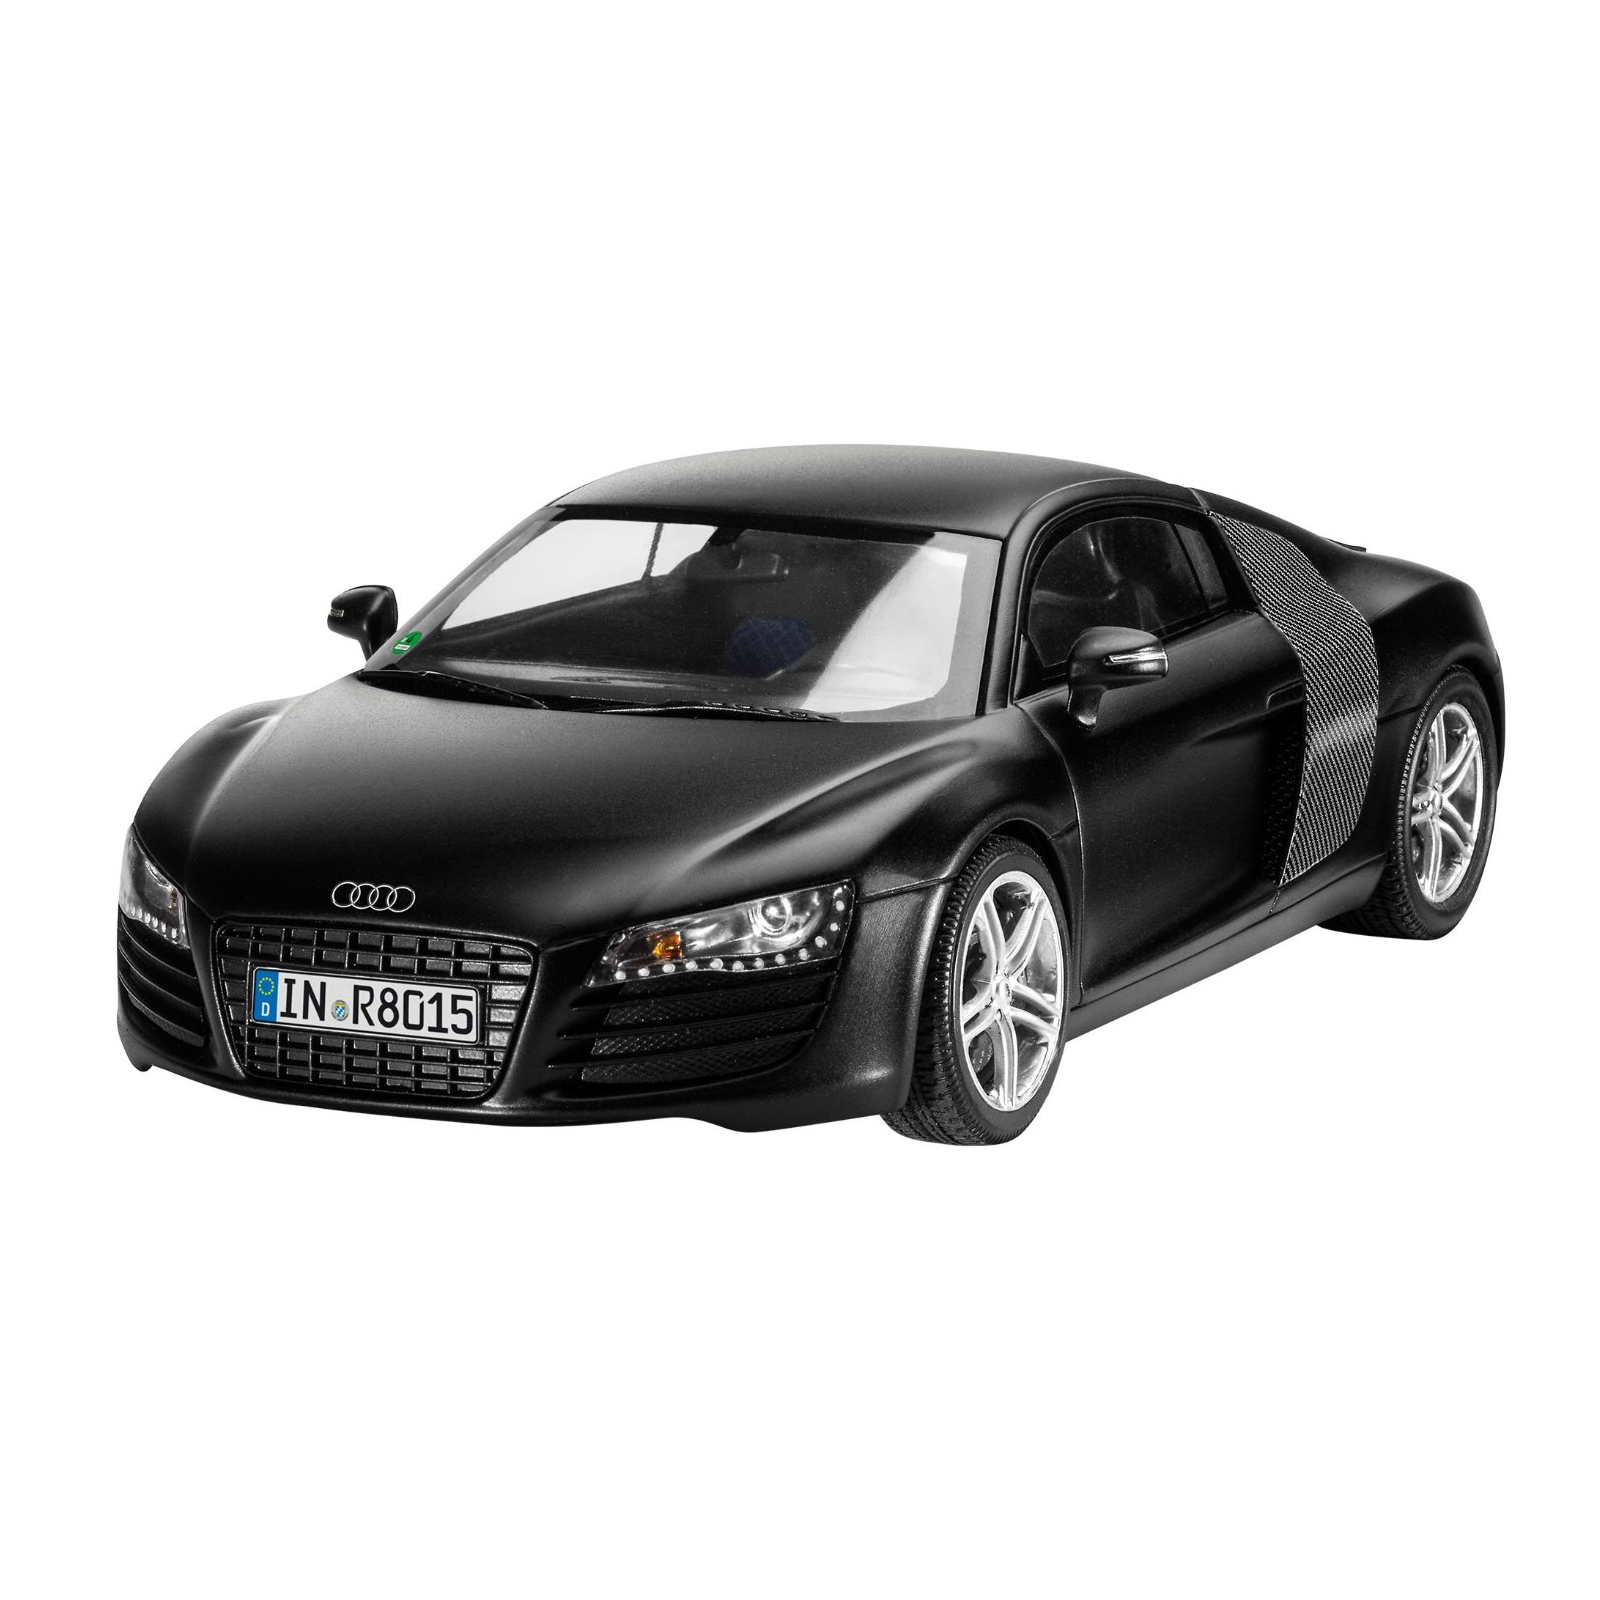 Сборная модель Revell Автомобиль Audi R8 black 1:24 (7057) изображение 2